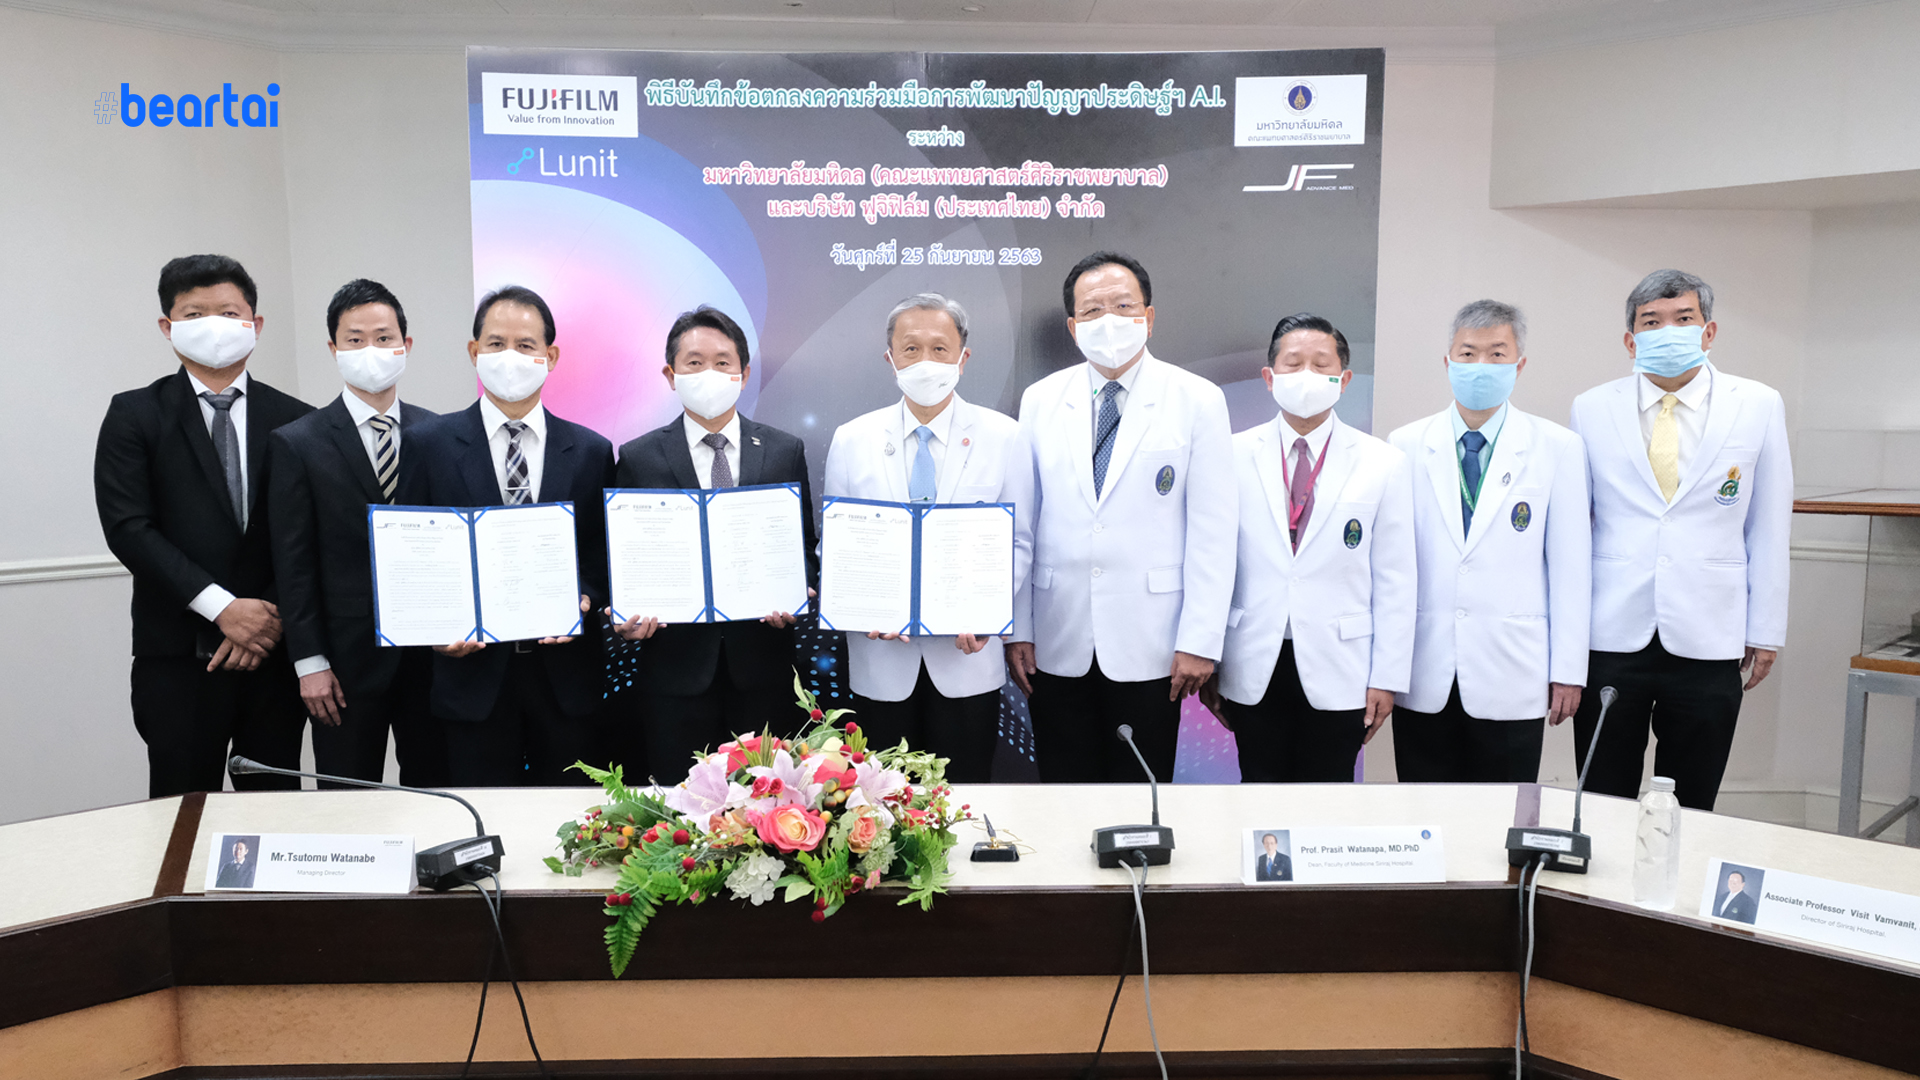 ฟูจิฟิล์มและศิริราช ลงนาม MOU ร่วมกันพัฒนา AI  สำหรับงานรังสีวินิจฉัยเพื่อยกระดับการแพทย์ของไทย